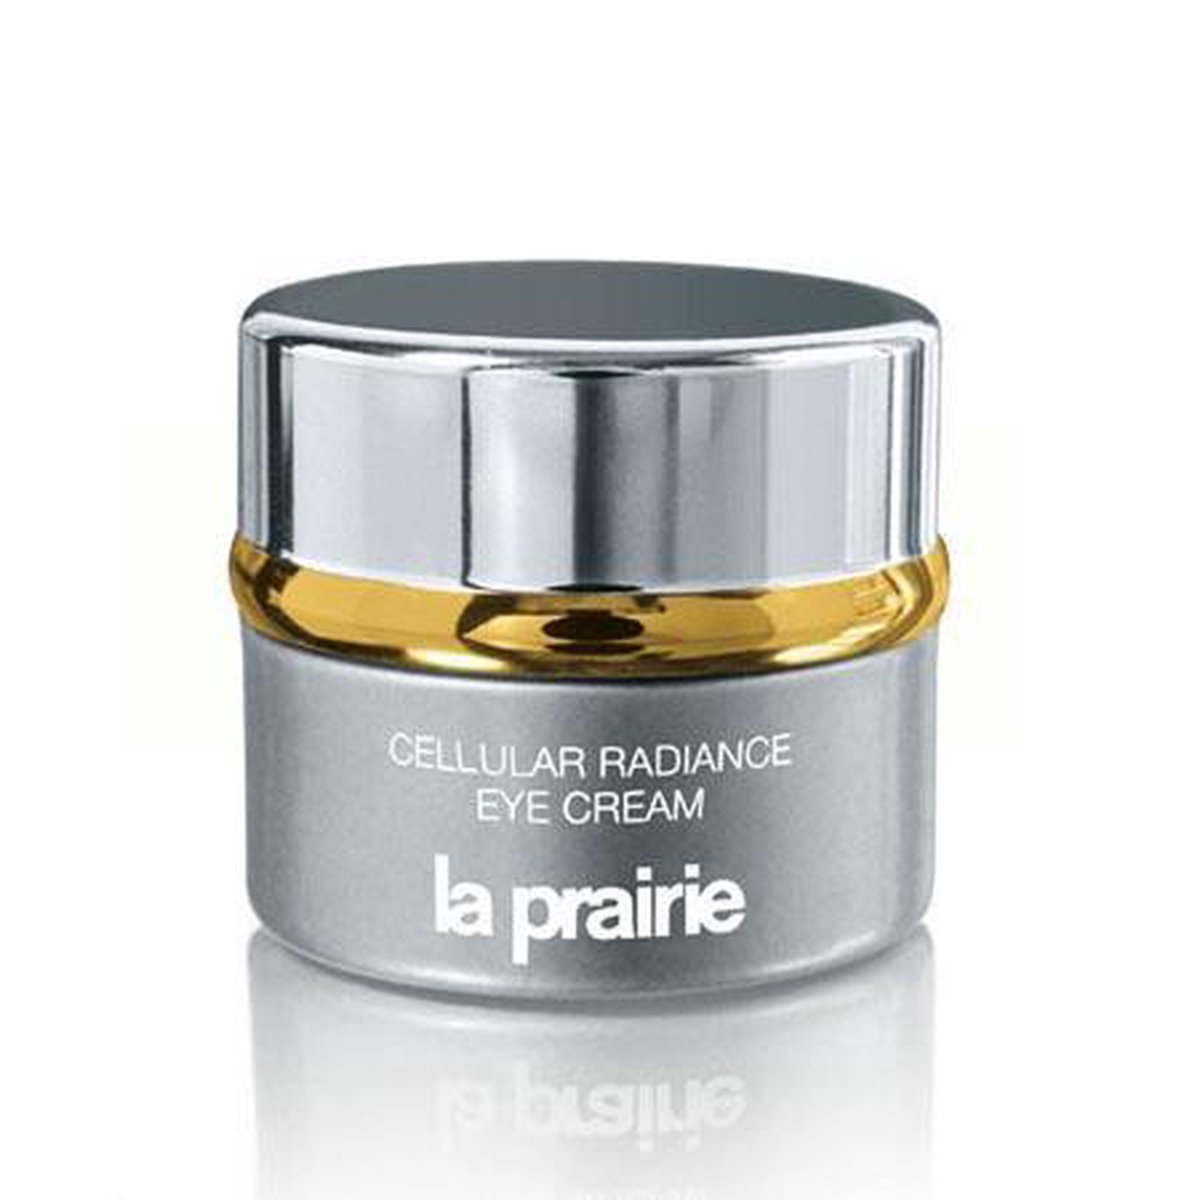 La Prairie Cellular RAdiance crème pour les yeux 15 ml | bol.com